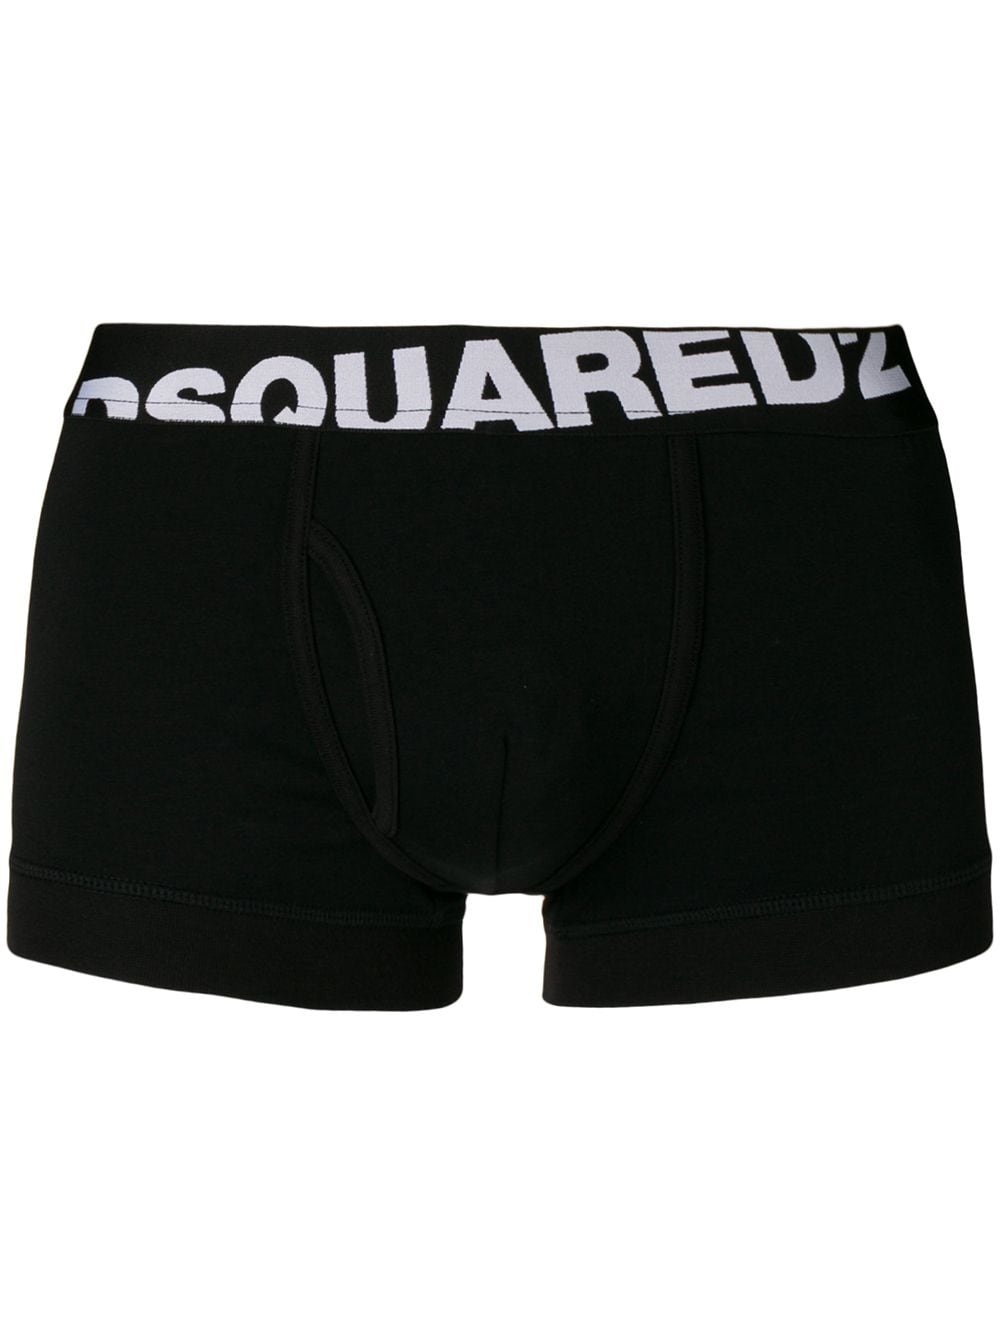 Dsquared2 DCXC90030 Two Pack Logo Boxer Trunk - Black - Escape Menswear